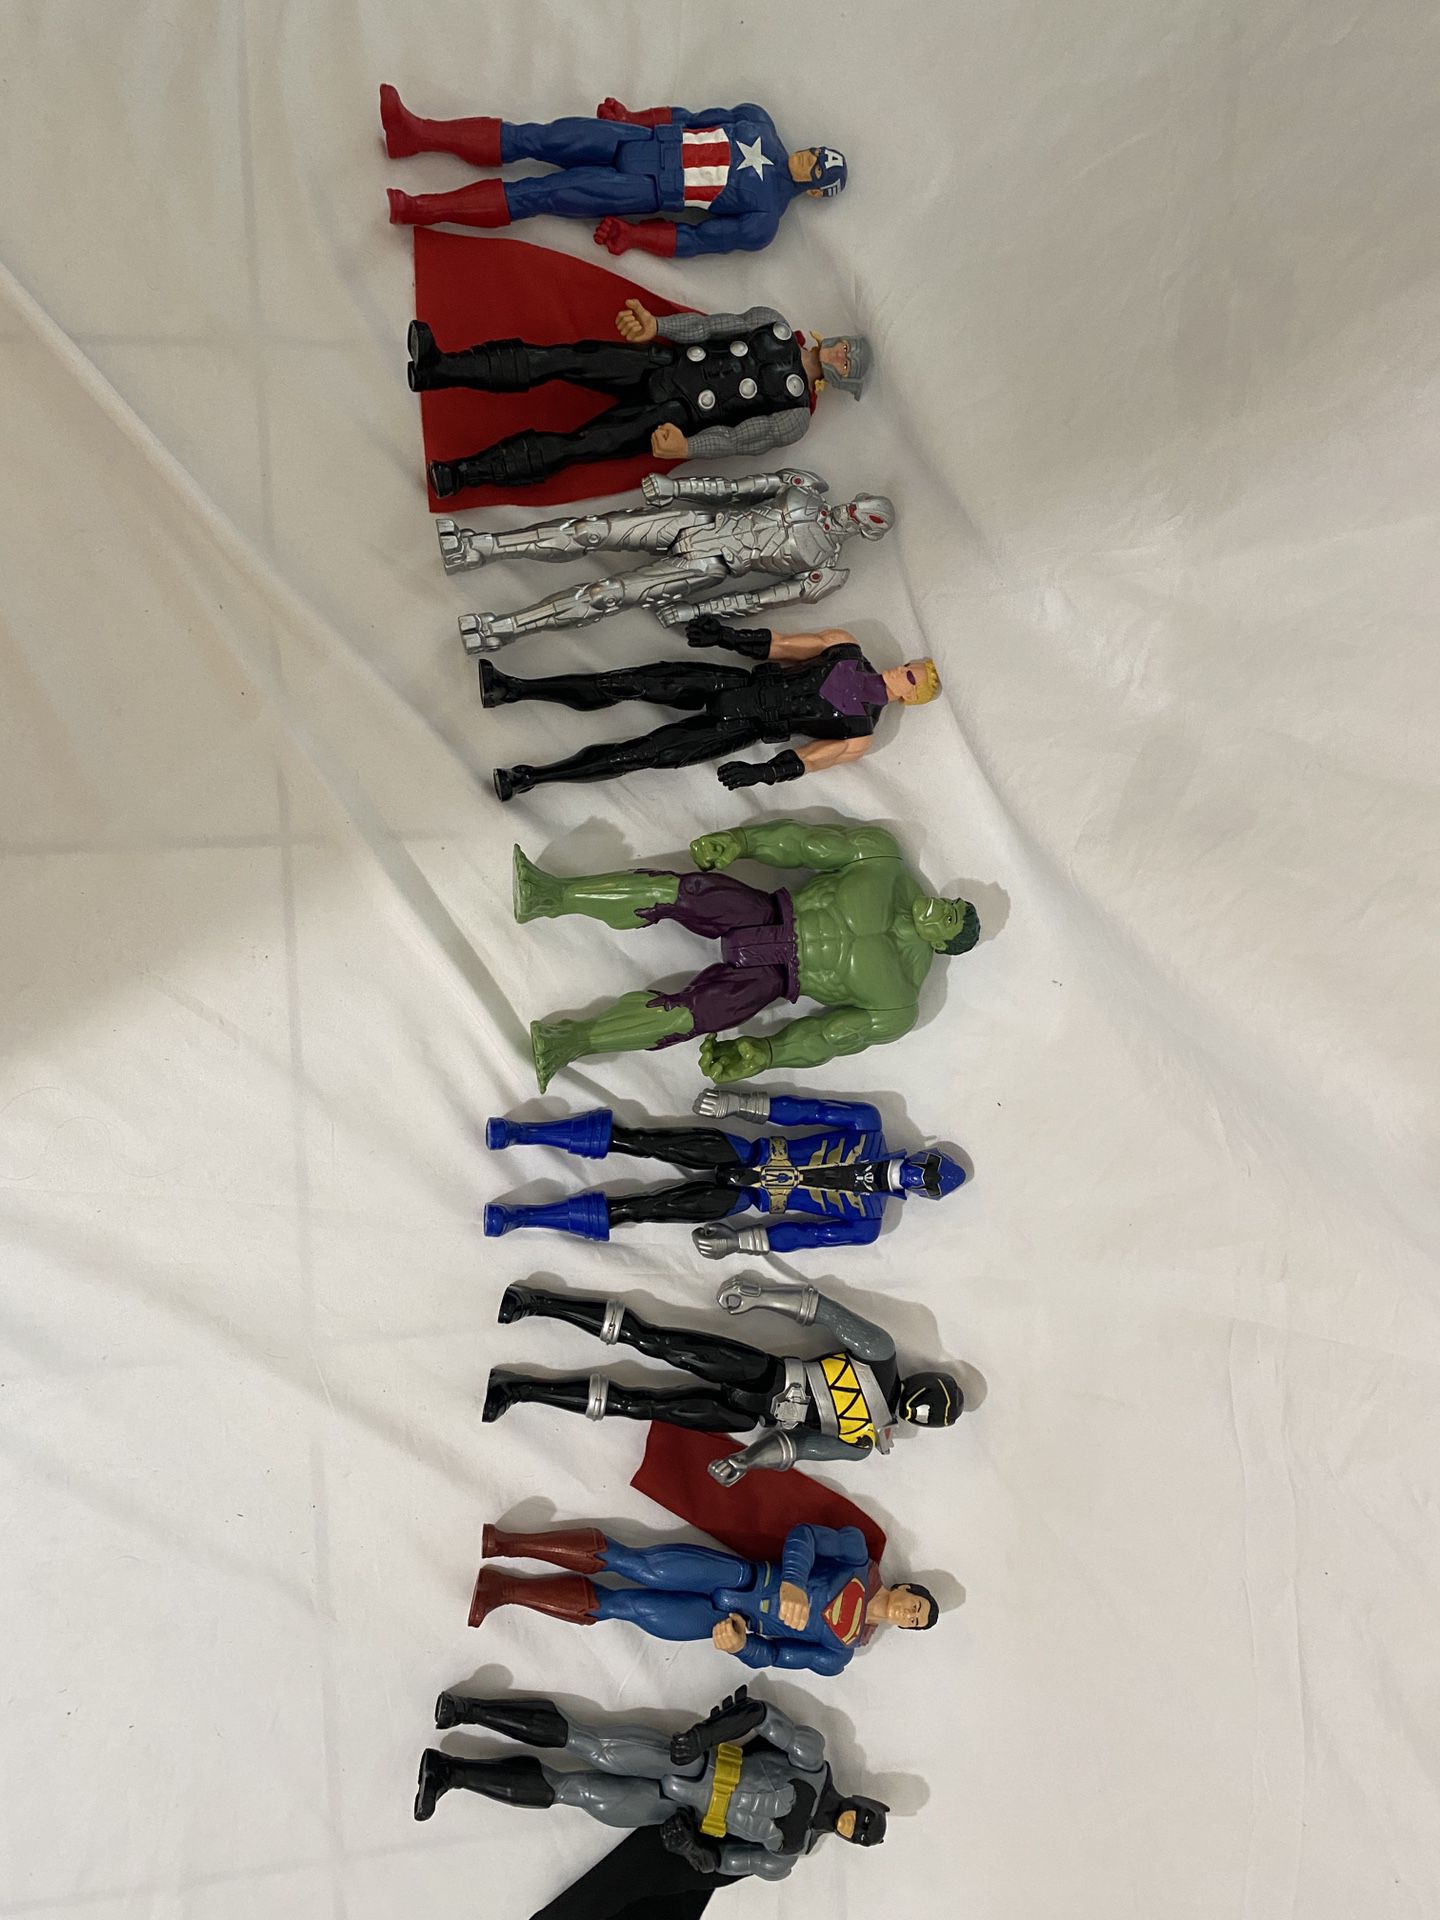 Boys Superhero Figurines